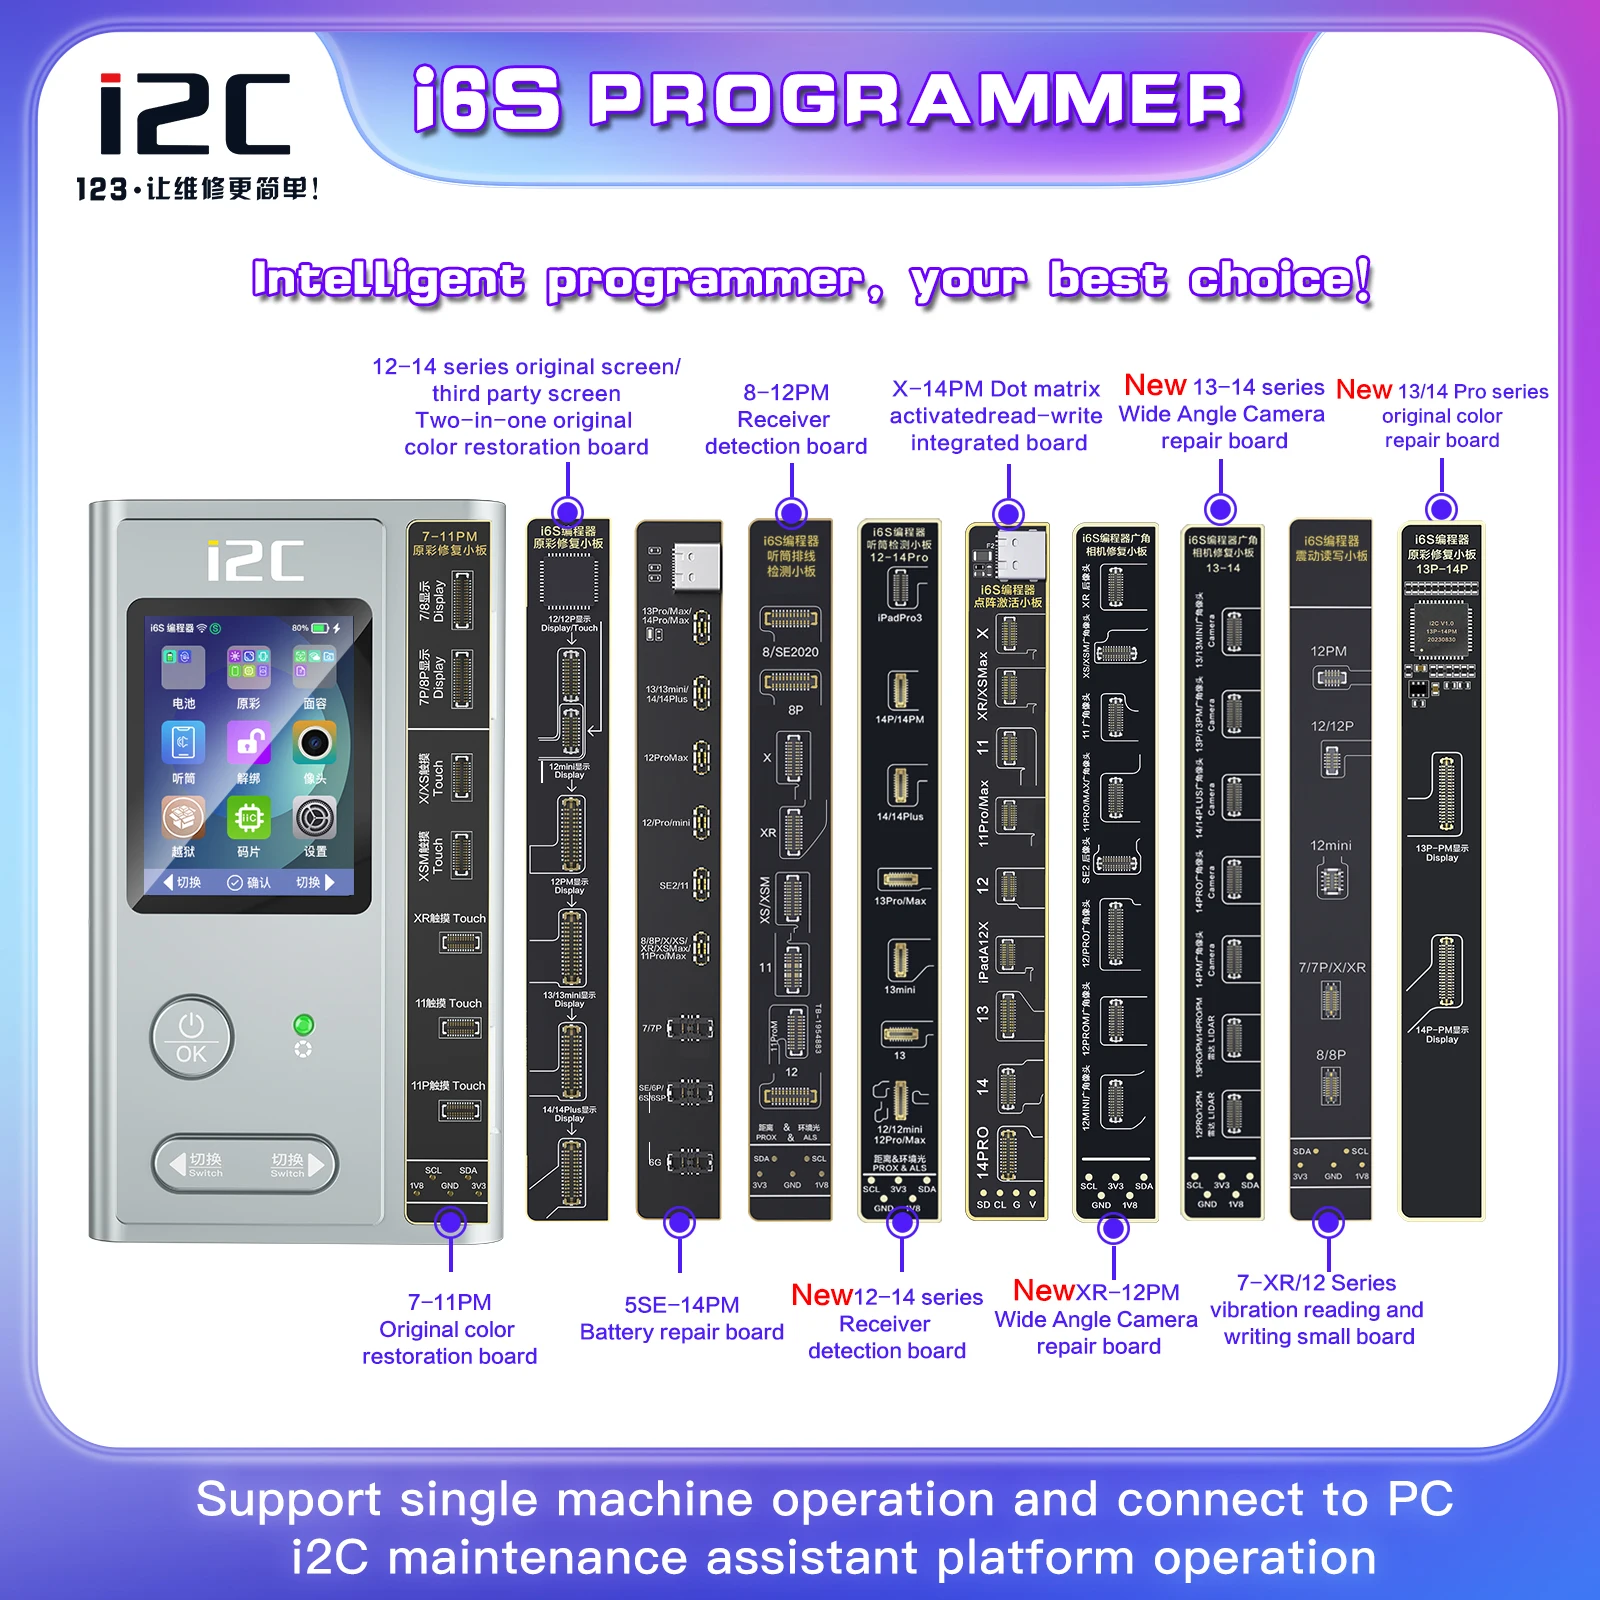 

Программатор I2C I6S для IPhone X-15 Pro Max, умный программатор с функцией True Tone для чтения, записи, ремонта, распознавания лица, отпечатков пальцев, аккумулятора, вибратора